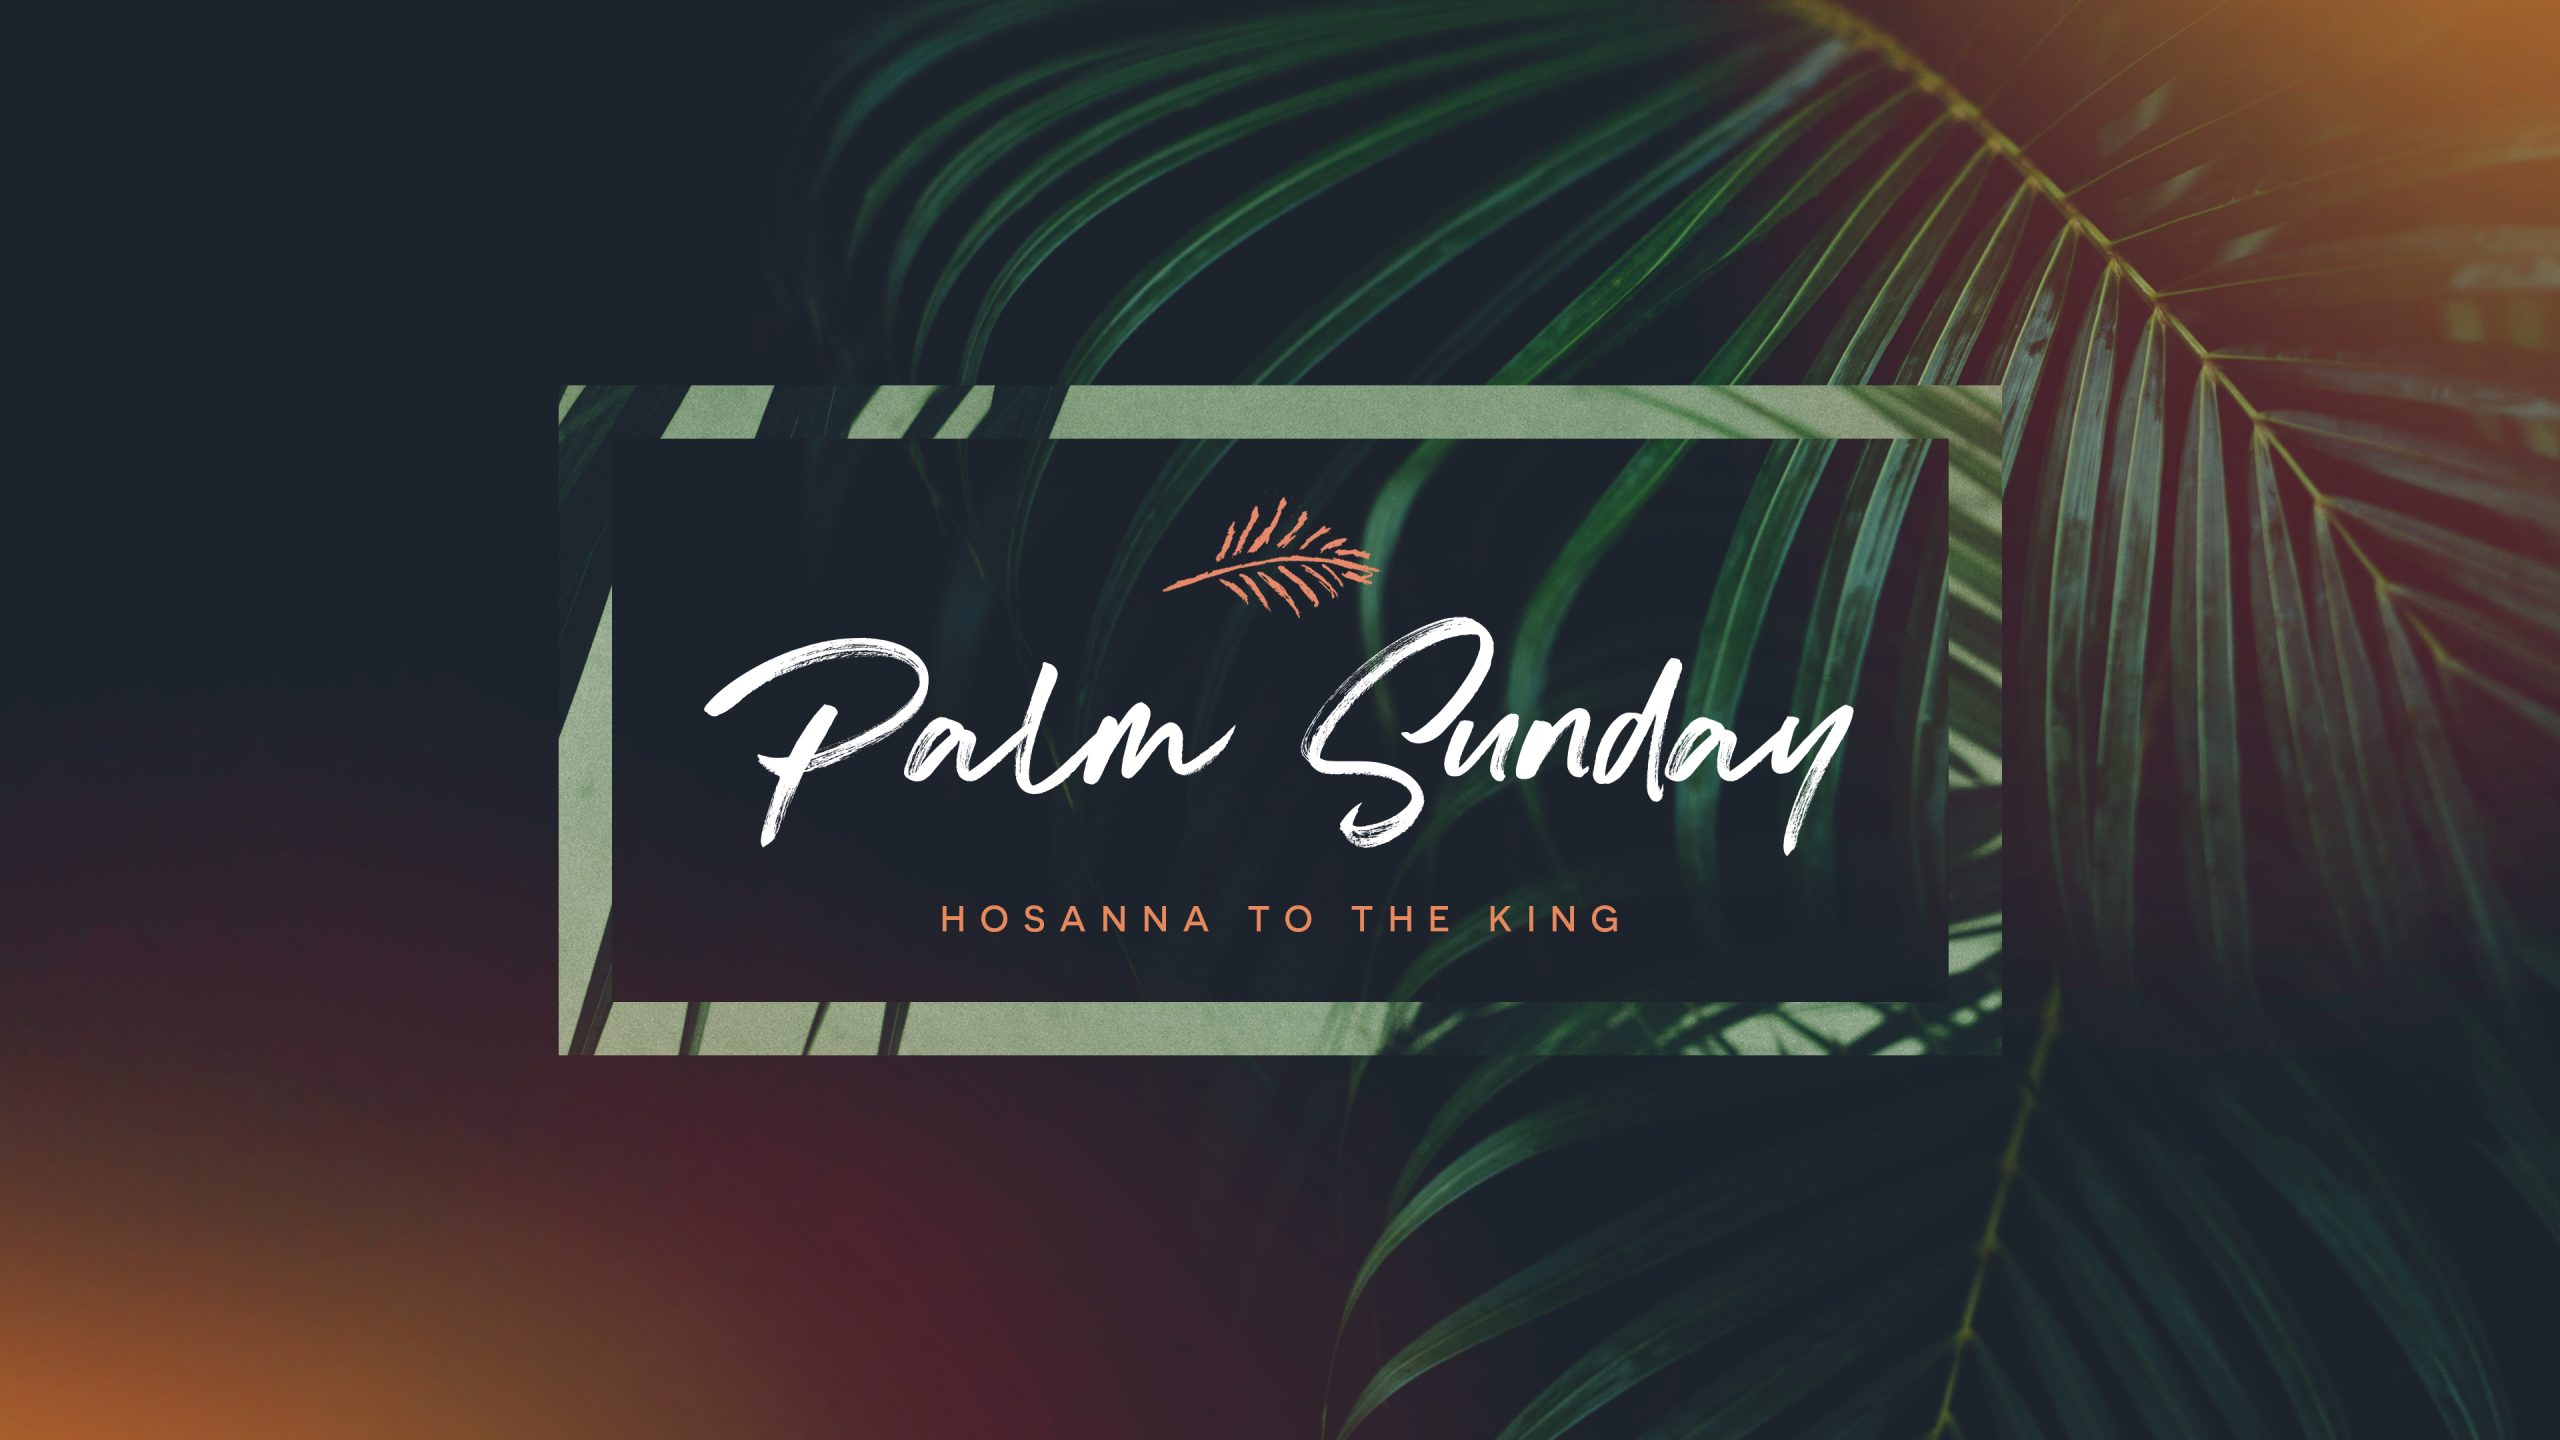 Hosanna! Palm Sunday